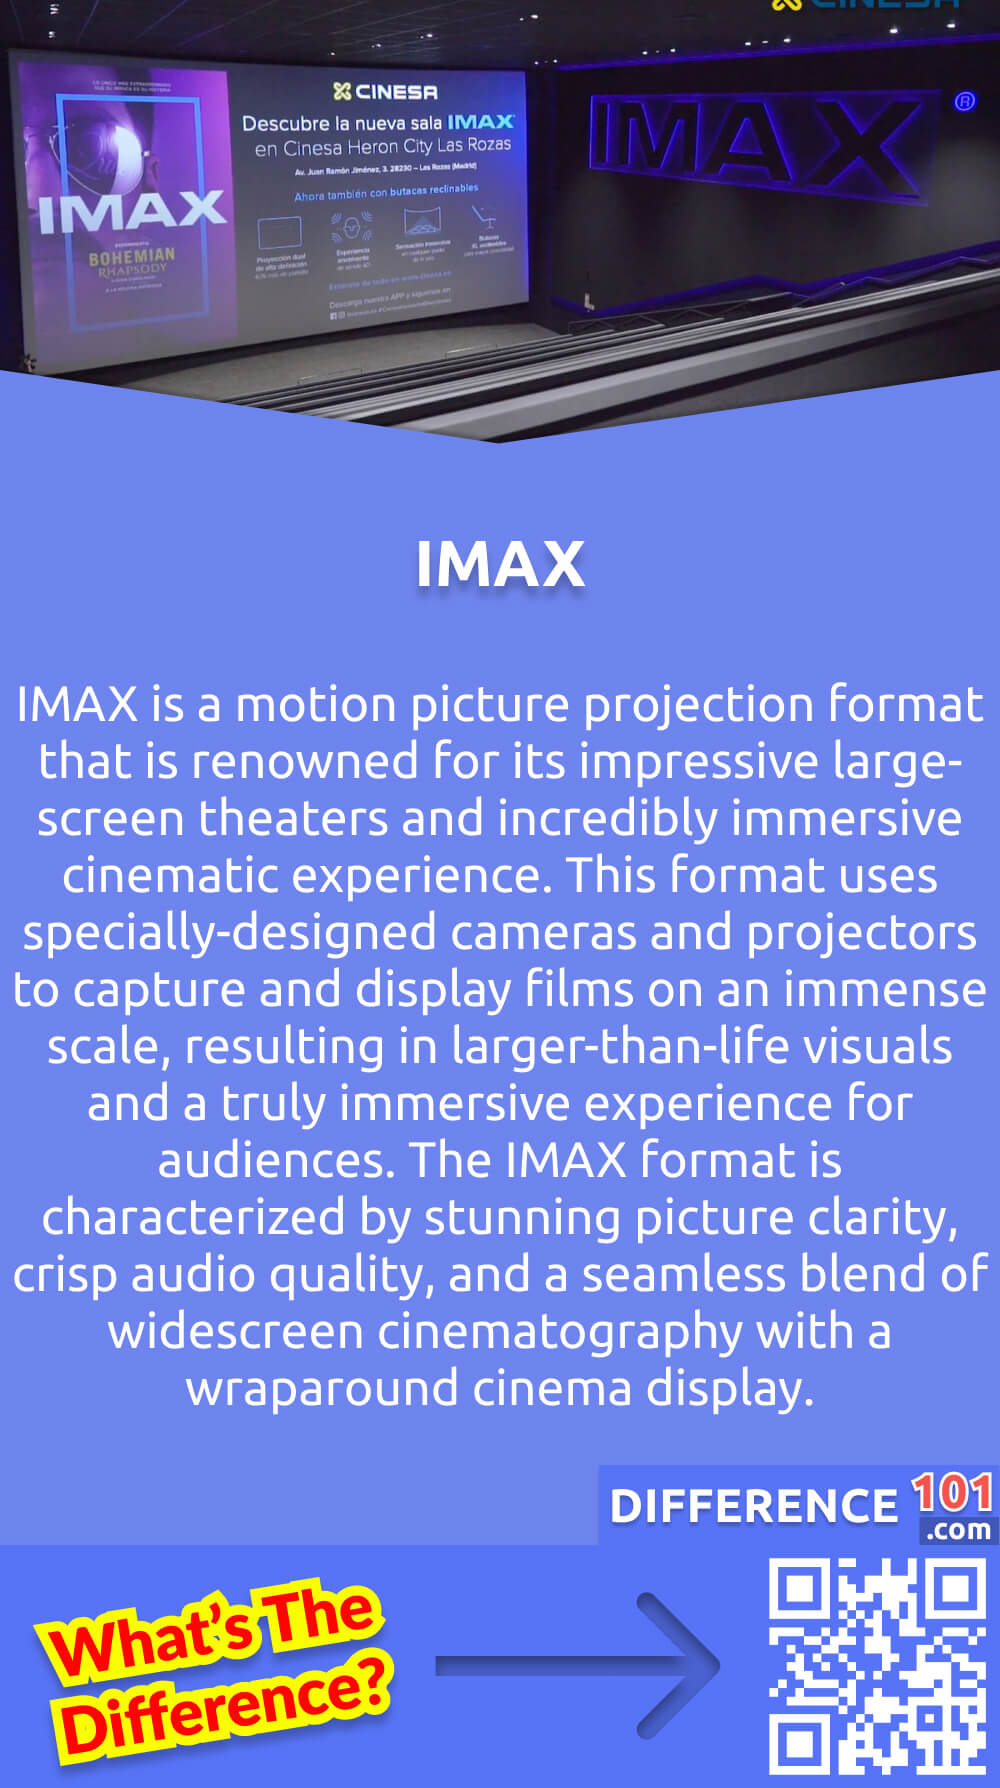 Was ist IMAX? IMAX ist ein Filmprojektionsformat, das für seine beeindruckenden Großbildkinos und sein unglaublich intensives Kinoerlebnis bekannt ist. Bei diesem Format werden speziell entwickelte Kameras und Projektoren verwendet, um Filme in einem riesigen Maßstab zu erfassen und zu zeigen, was zu überlebensgroßen Bildern und einem wahrhaft eindringlichen Erlebnis für die Zuschauer führt. Das IMAX-Format zeichnet sich durch eine atemberaubende Bildschärfe, eine klare Tonqualität und eine nahtlose Verschmelzung von Breitwandkinematografie mit einer Rundum-Kinoanzeige aus. IMAX-Kinos eignen sich besonders gut für actiongeladene Filme, Naturdokumentationen und visuell beeindruckende Kunstwerke, die es verdienen, in einem wahrhaft epischen Rahmen gesehen zu werden. Als weltweit führendes Unternehmen im Bereich der großformatigen Unterhaltung setzt IMAX immer wieder neue Maßstäbe und definiert die Art und Weise, wie die Menschen die Kunst des Films wahrnehmen, neu.